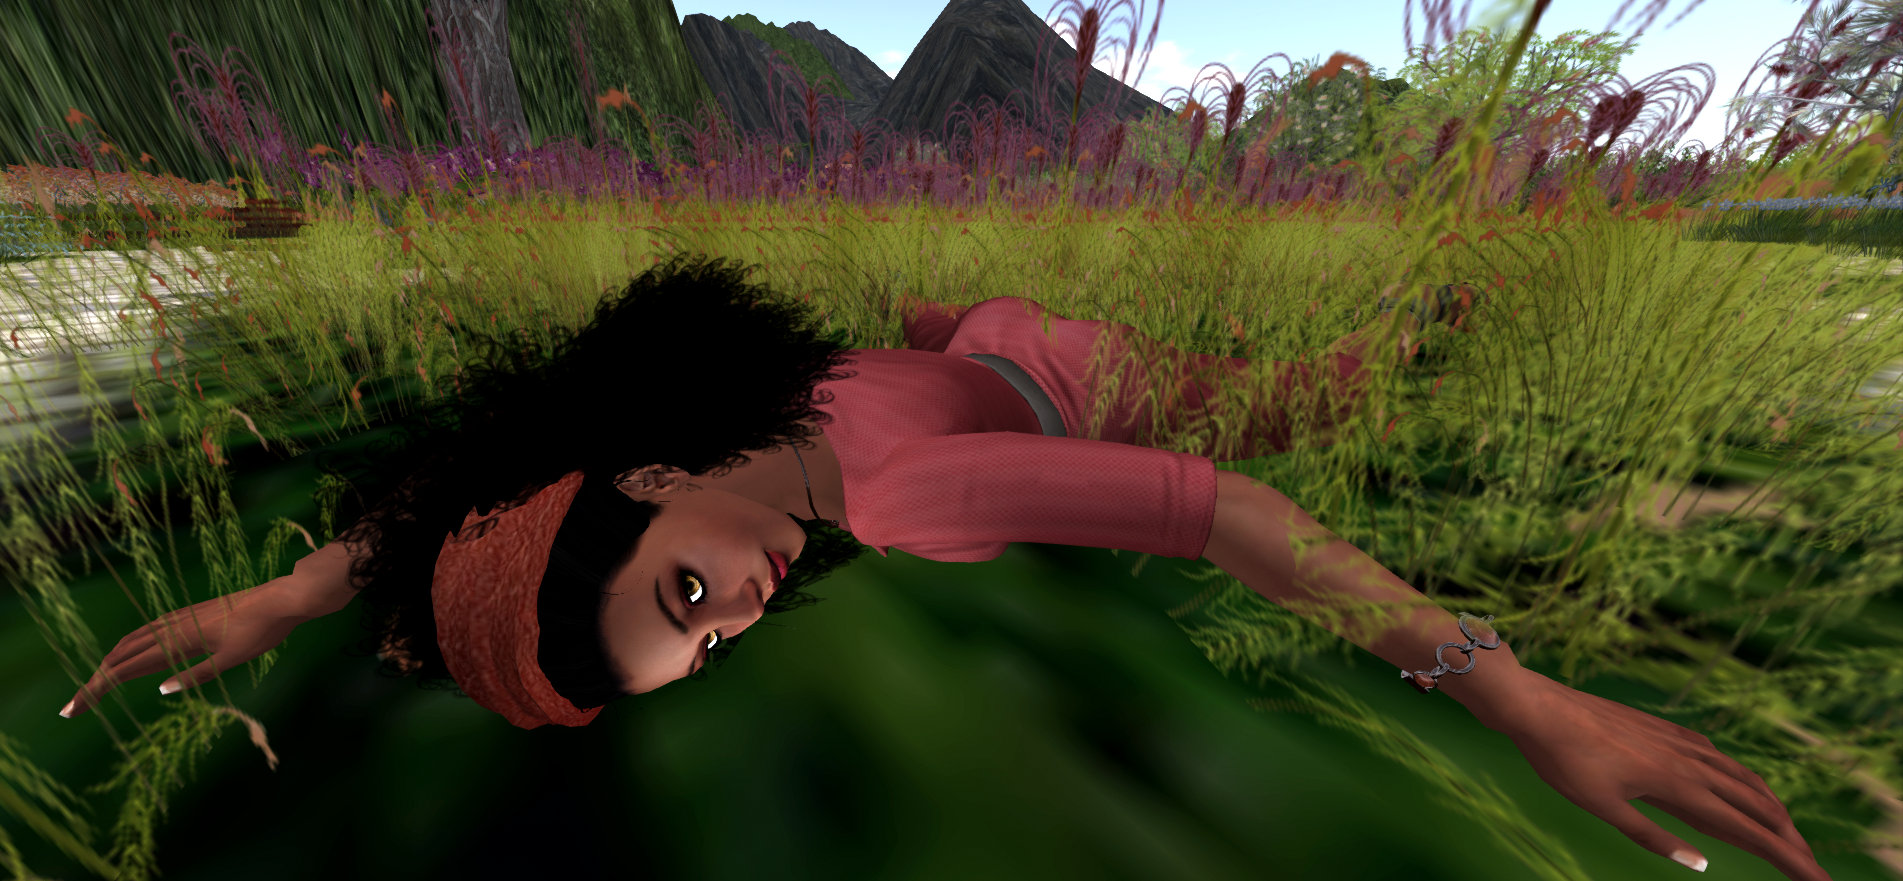 image of Vaneeesa Blaylock laying in field of flowers.